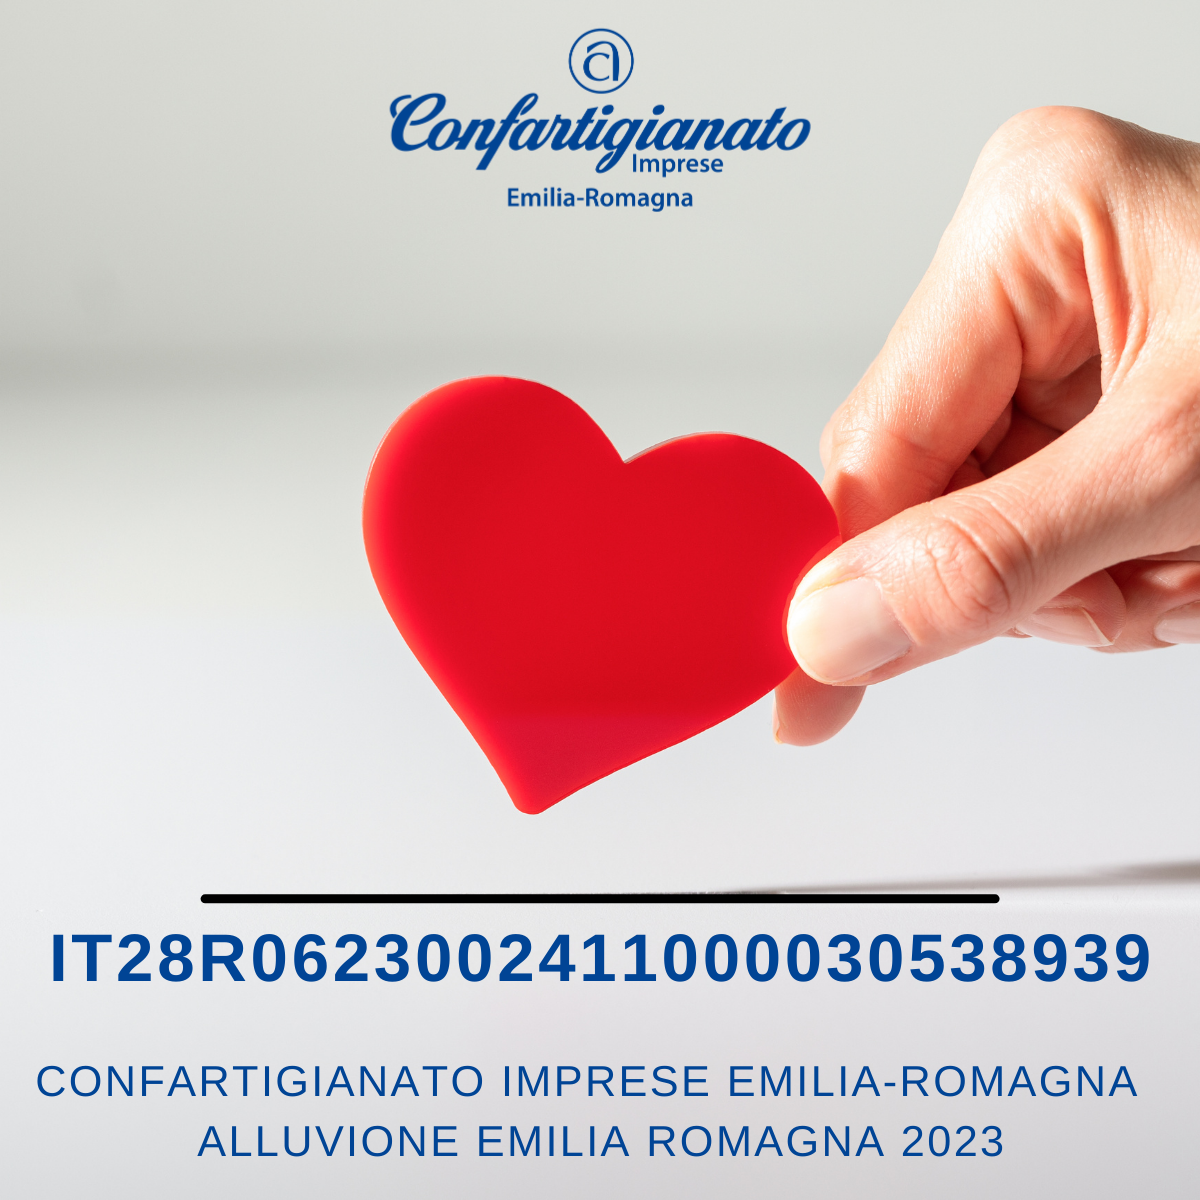 NEWS – Confartigianato imprese Emilia-Romagna alluvione Emilia Romagna 2023